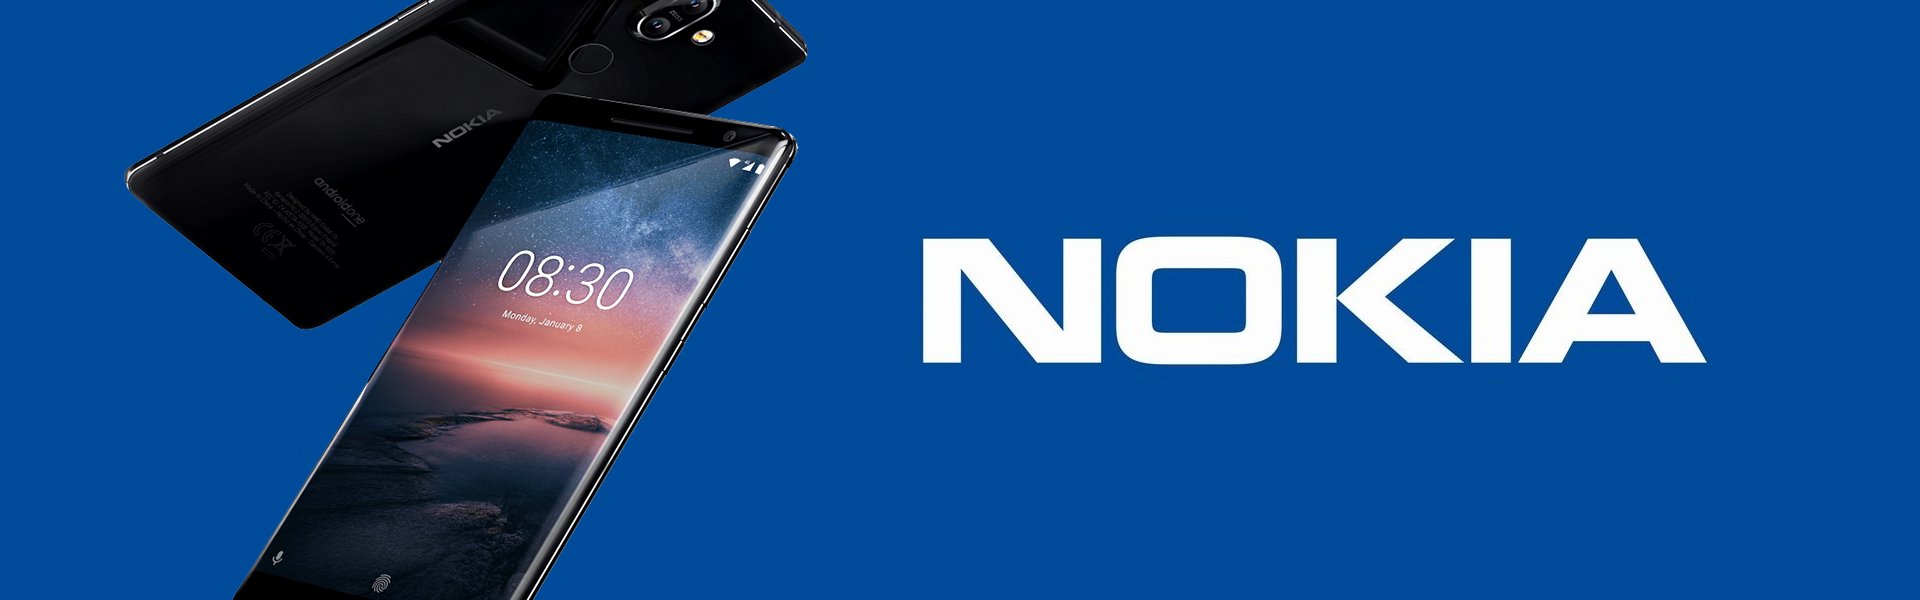 Nokia 225 4G, Black Nokia